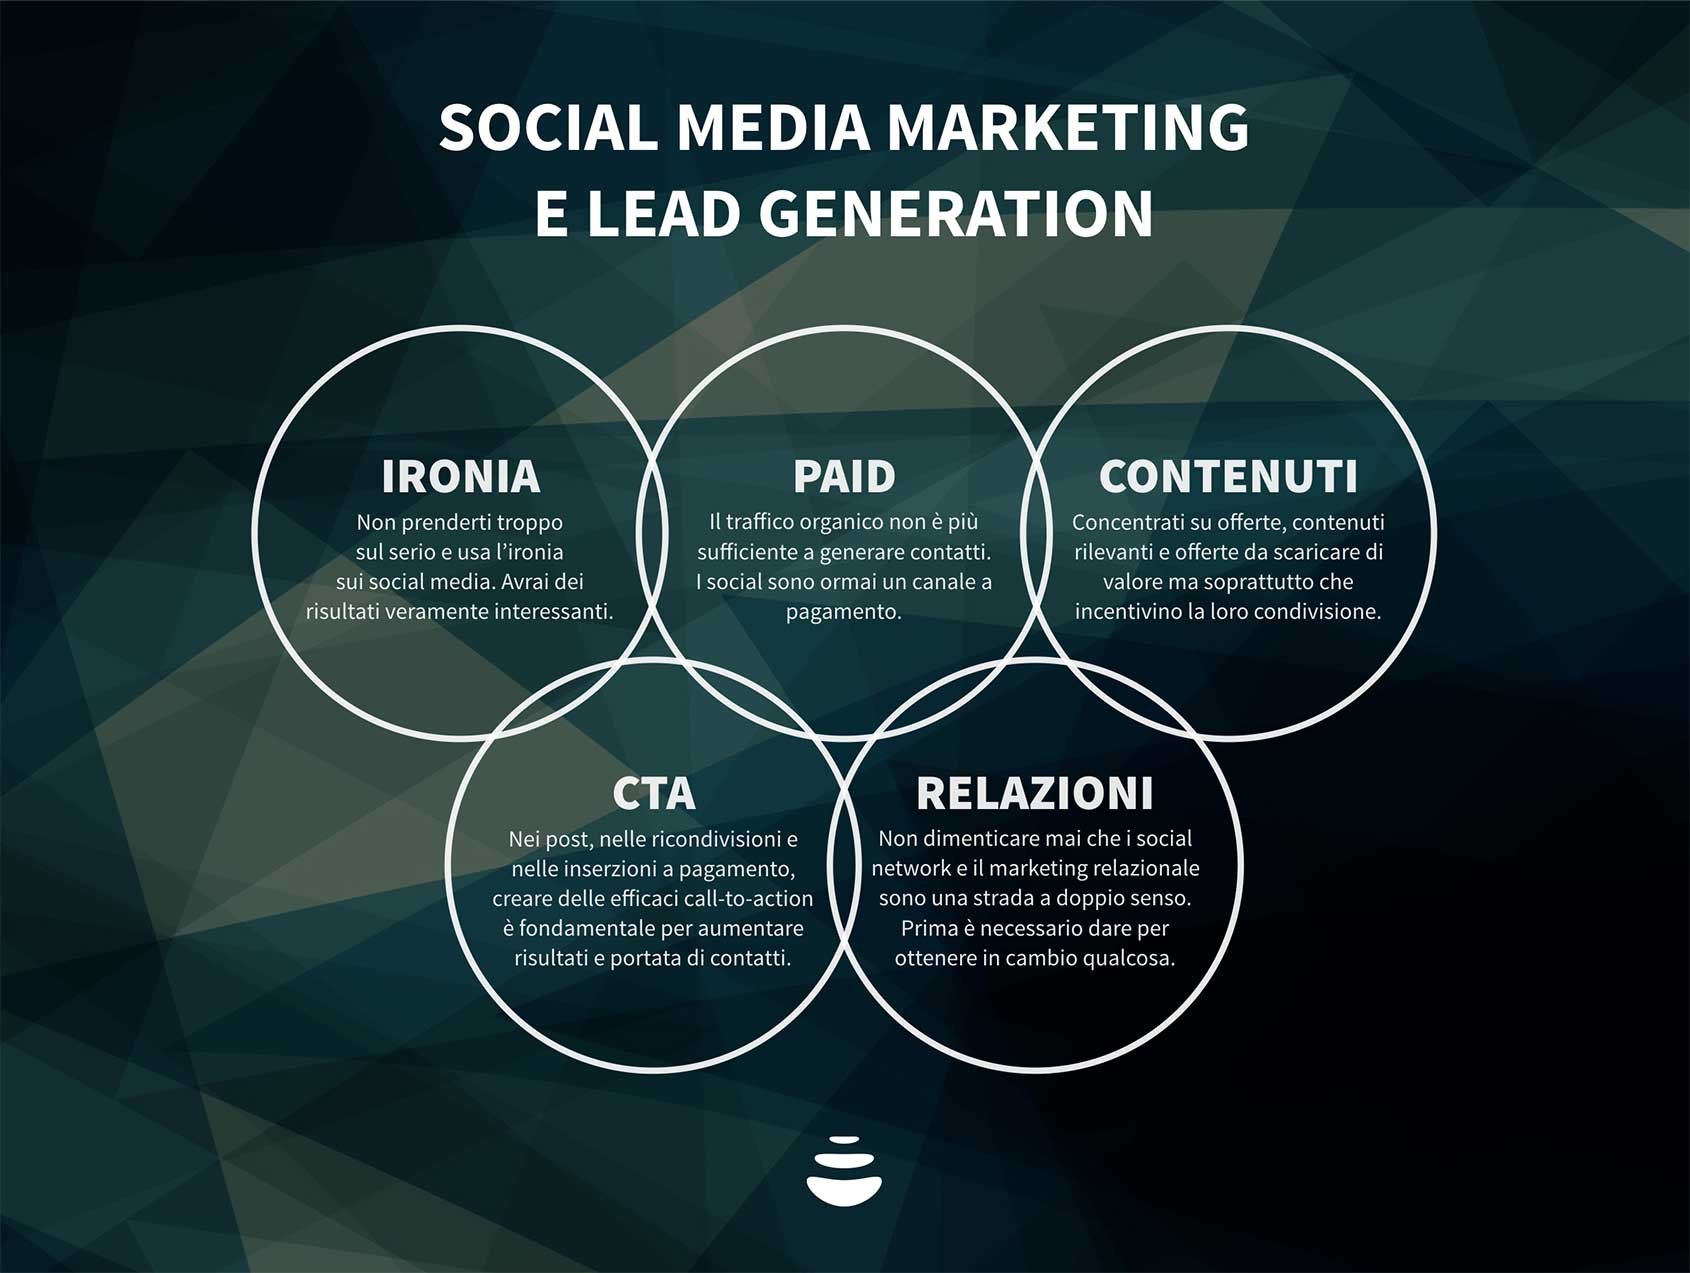 lead-generation-social-media-marketing